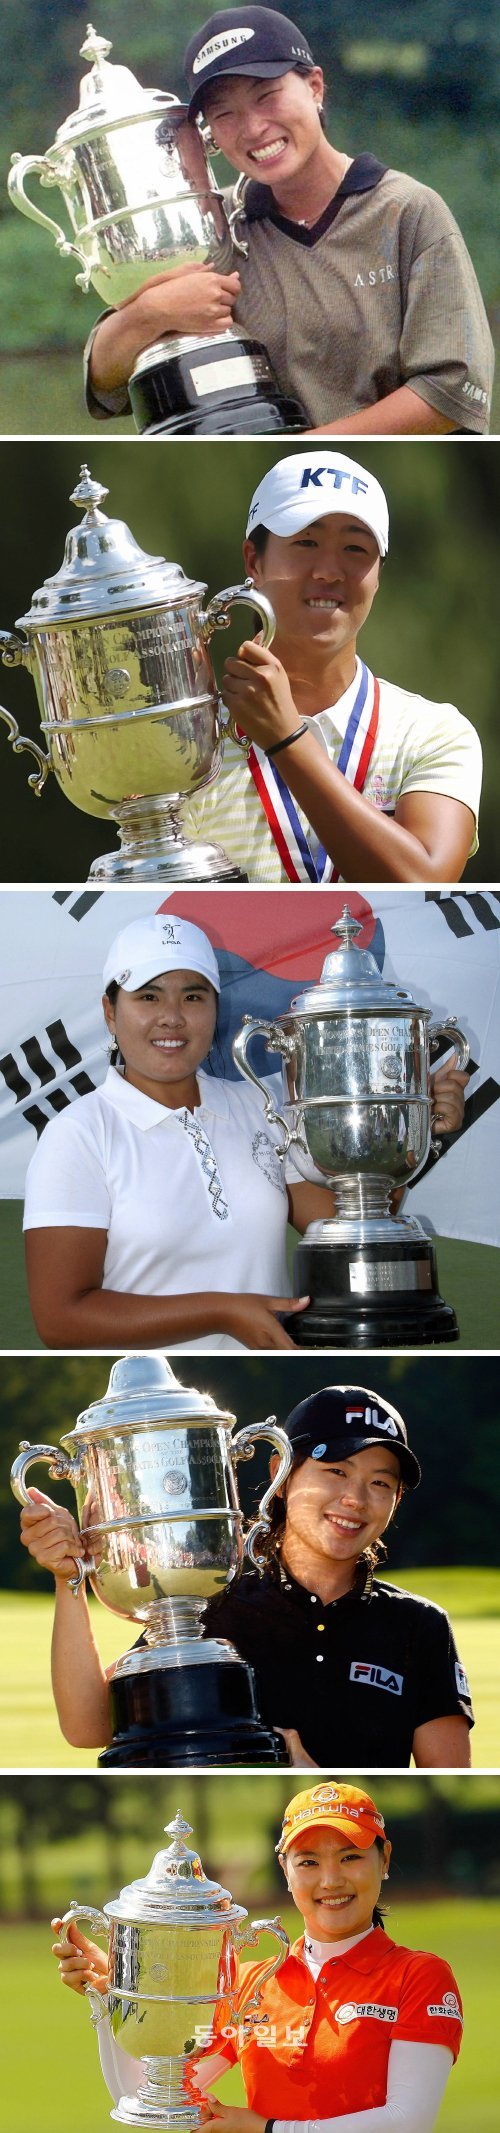 역대 US오픈 한국인 우승자들. (위부터 )1998년 박세리, 2005년 김주연, 2008년 박인비, 2009년 지은희, 2011년 유소연.